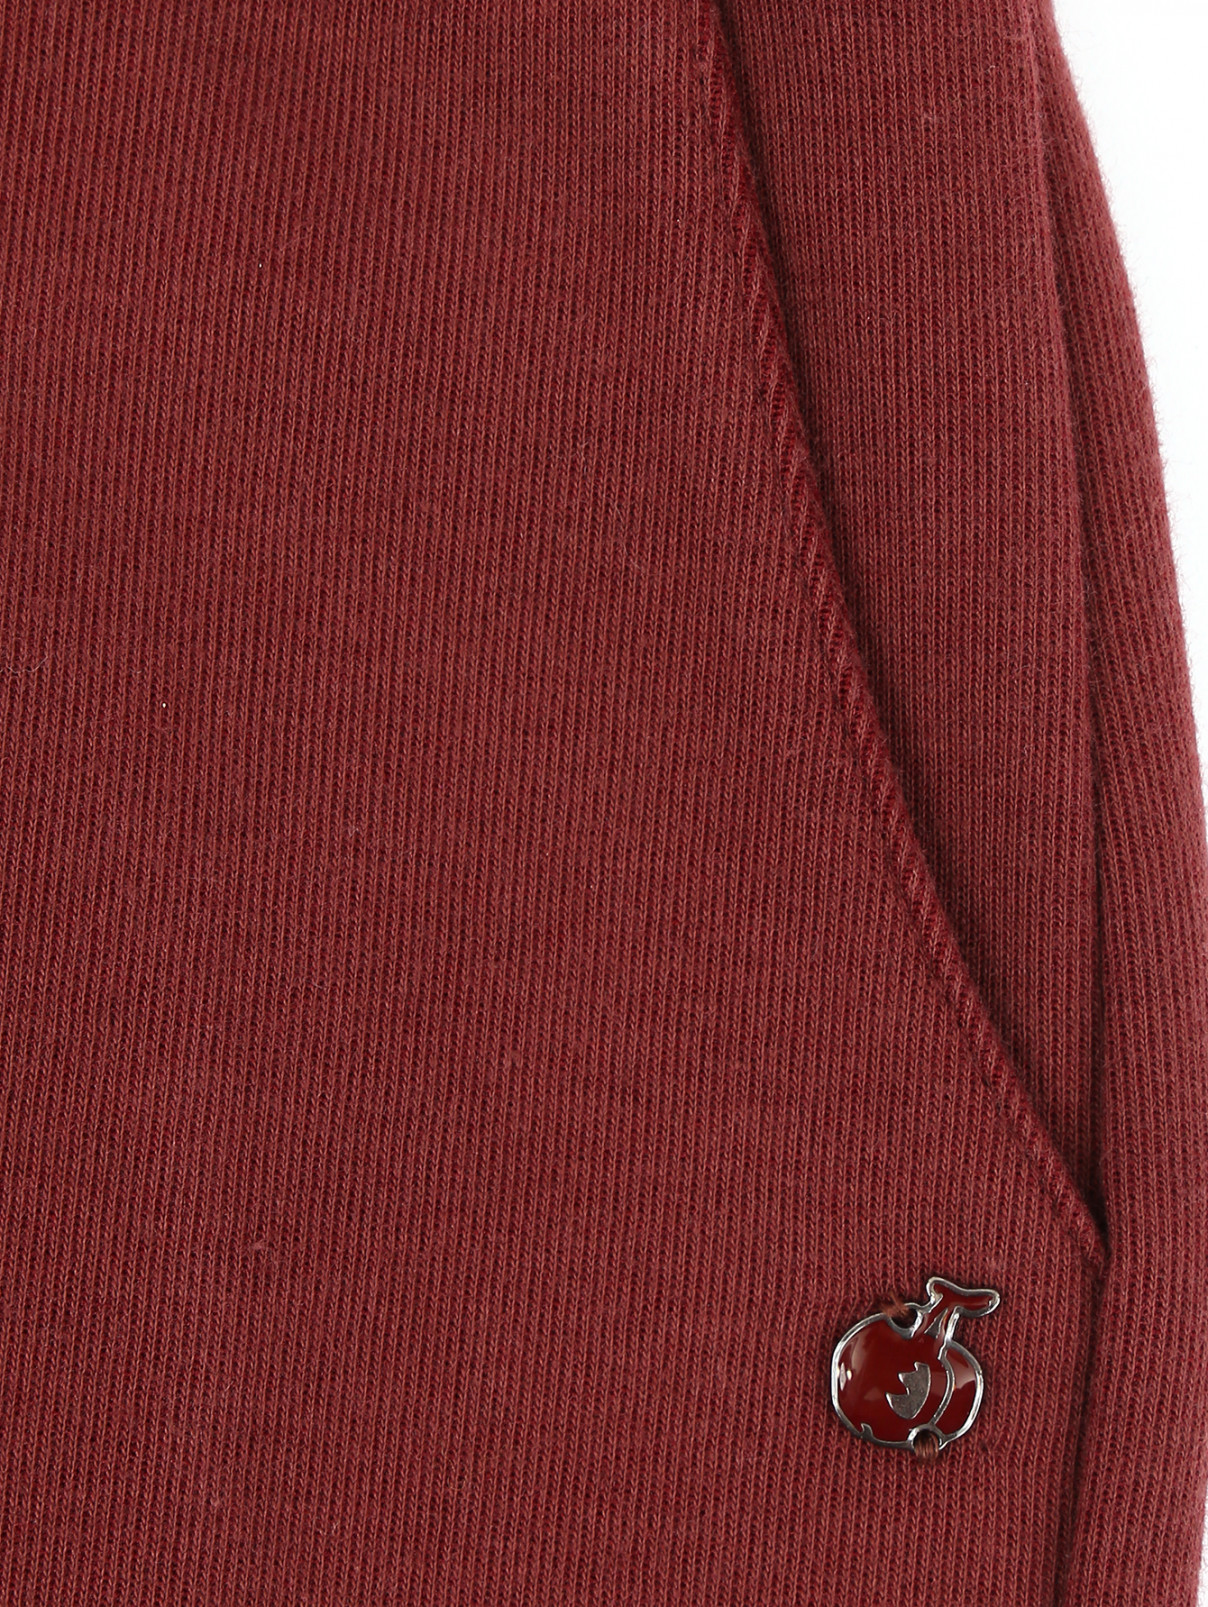 Брюки трикотажные с карманами BOSCO  –  Деталь  – Цвет:  Красный